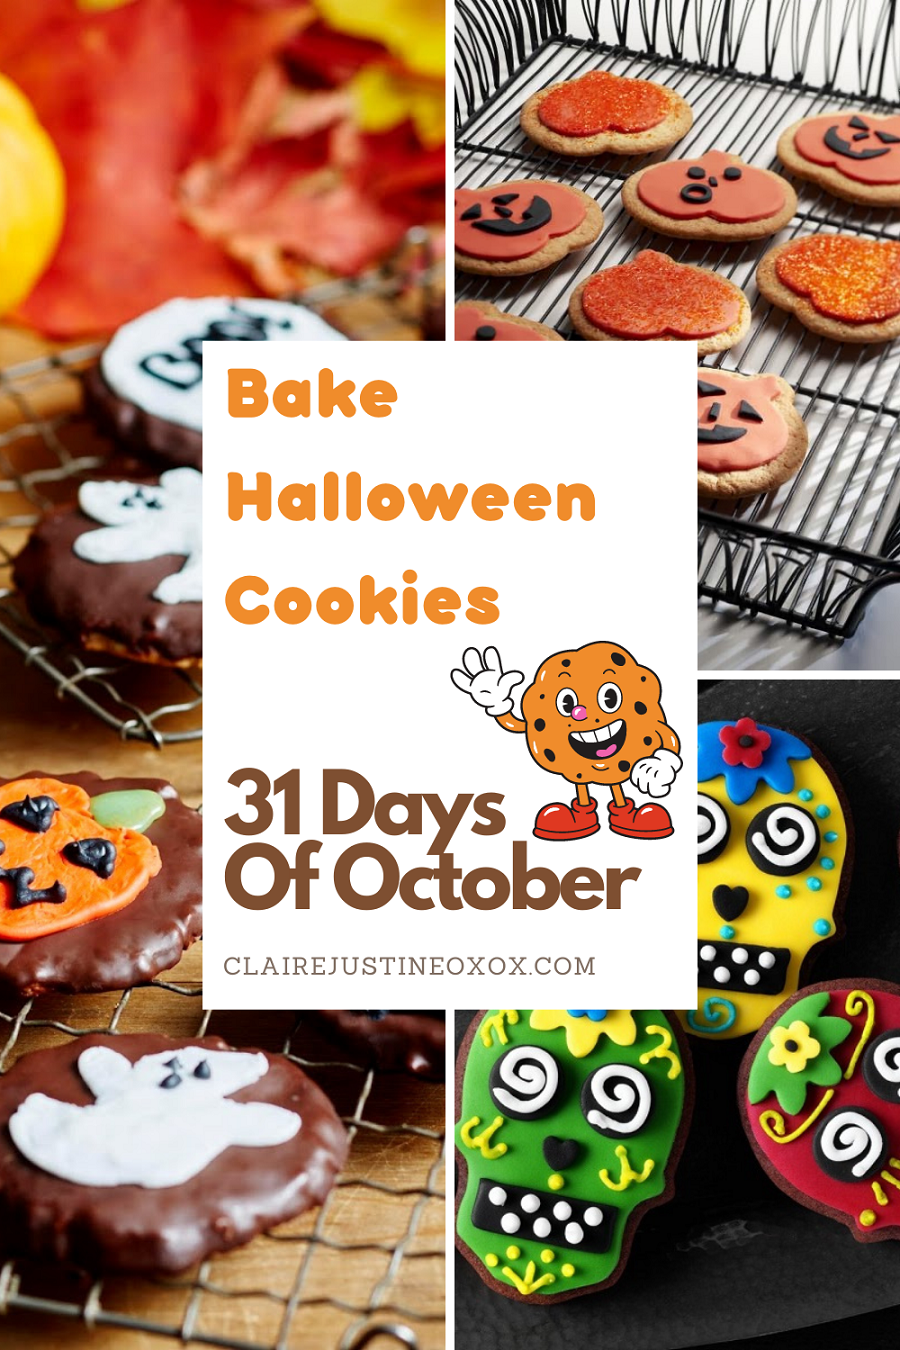 Bake Halloween Cookies: 31 Day Of October